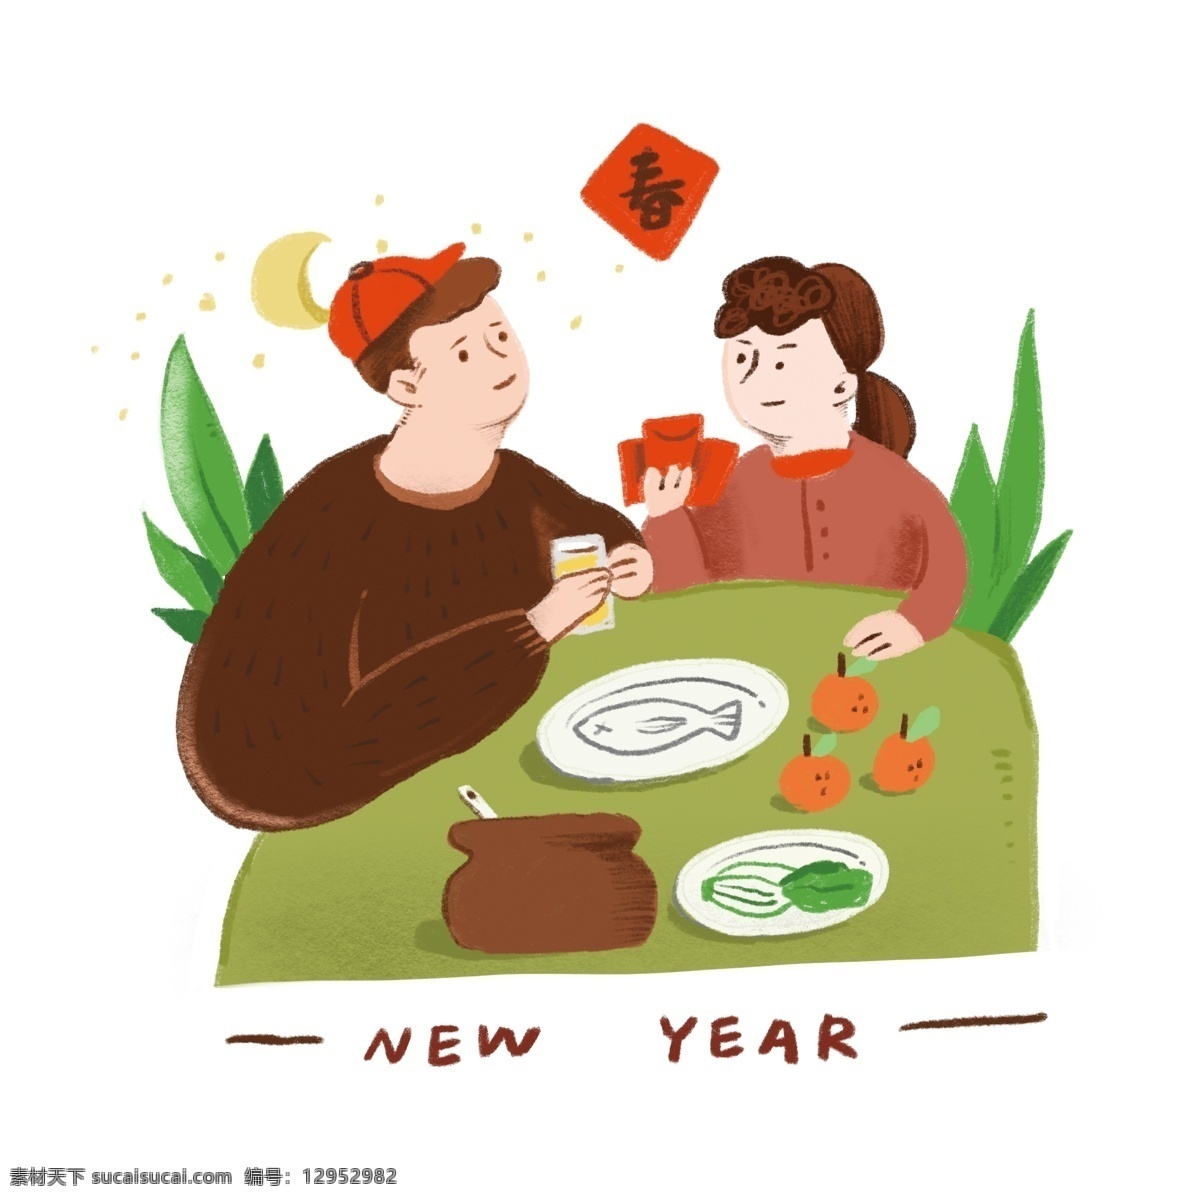 新年 家人 一起 吃 年夜饭 吃年夜饭 团圆 和谐 喜庆 传统 红包 复古 财运亨通 商业 手绘 喜气洋洋